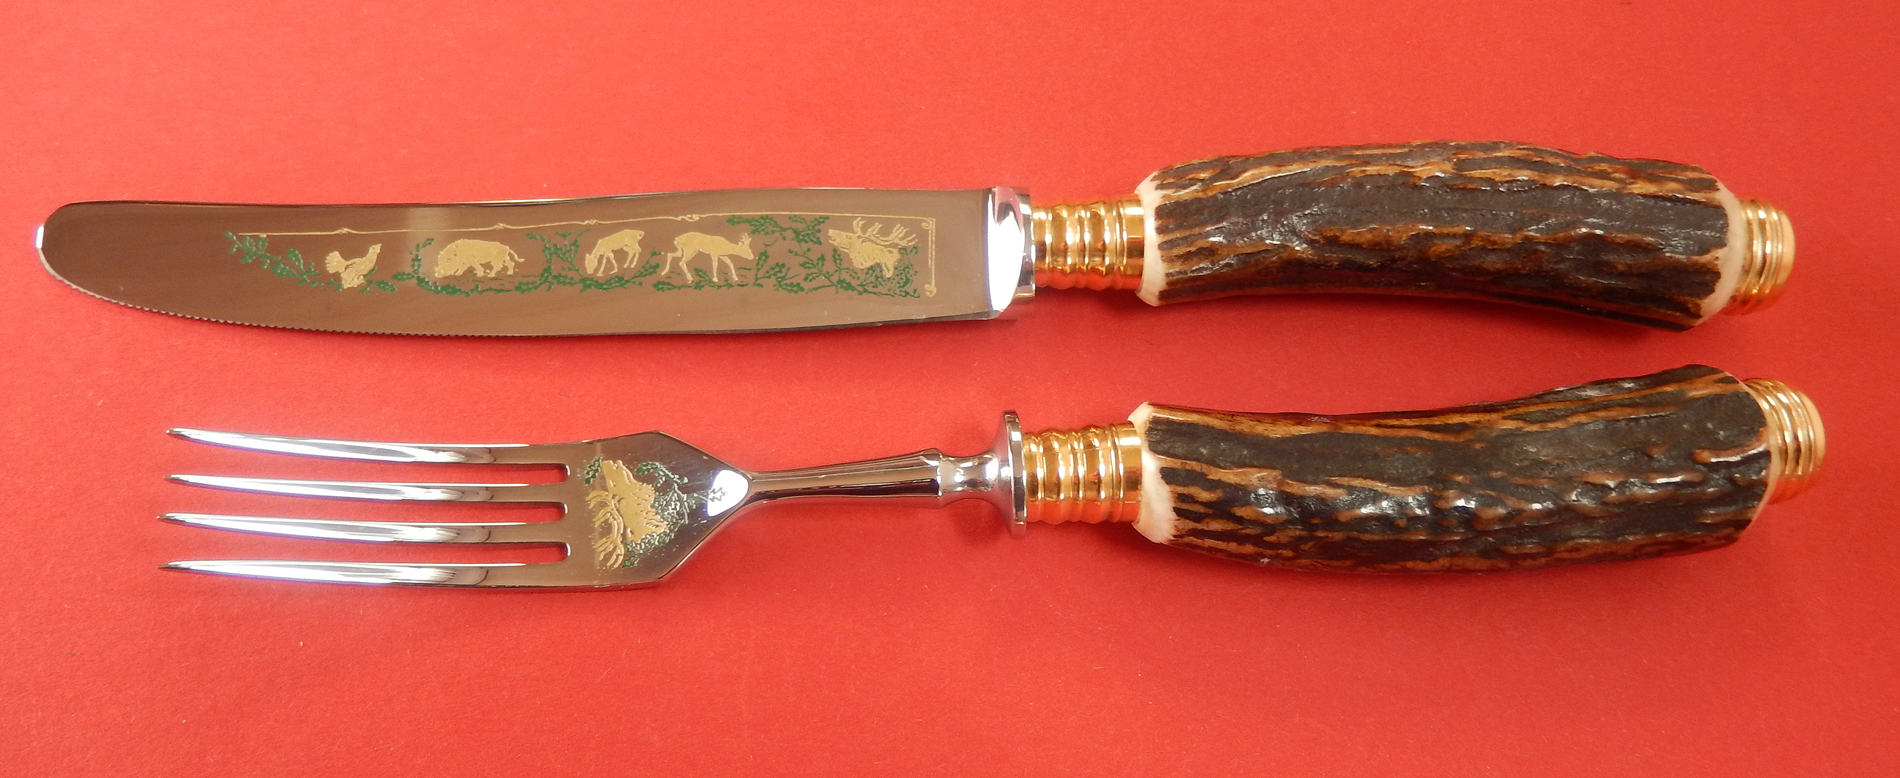 Messer und Gabel Rehwappen Griff aus echtem Hirschhorn, von Linder bei iss bestellen